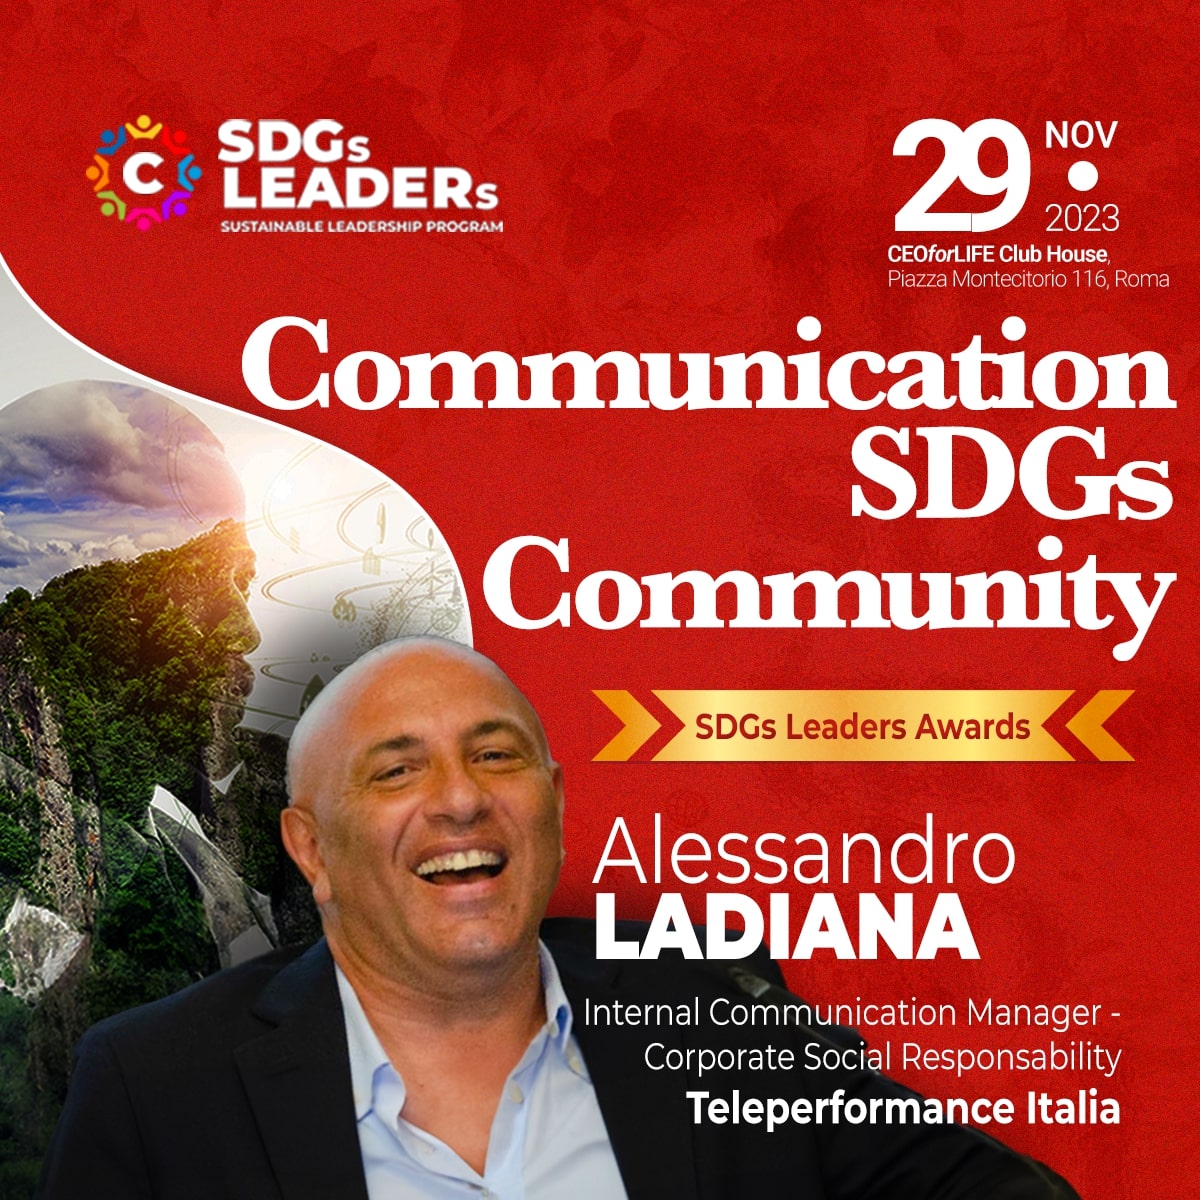 Alessandro Ladiana